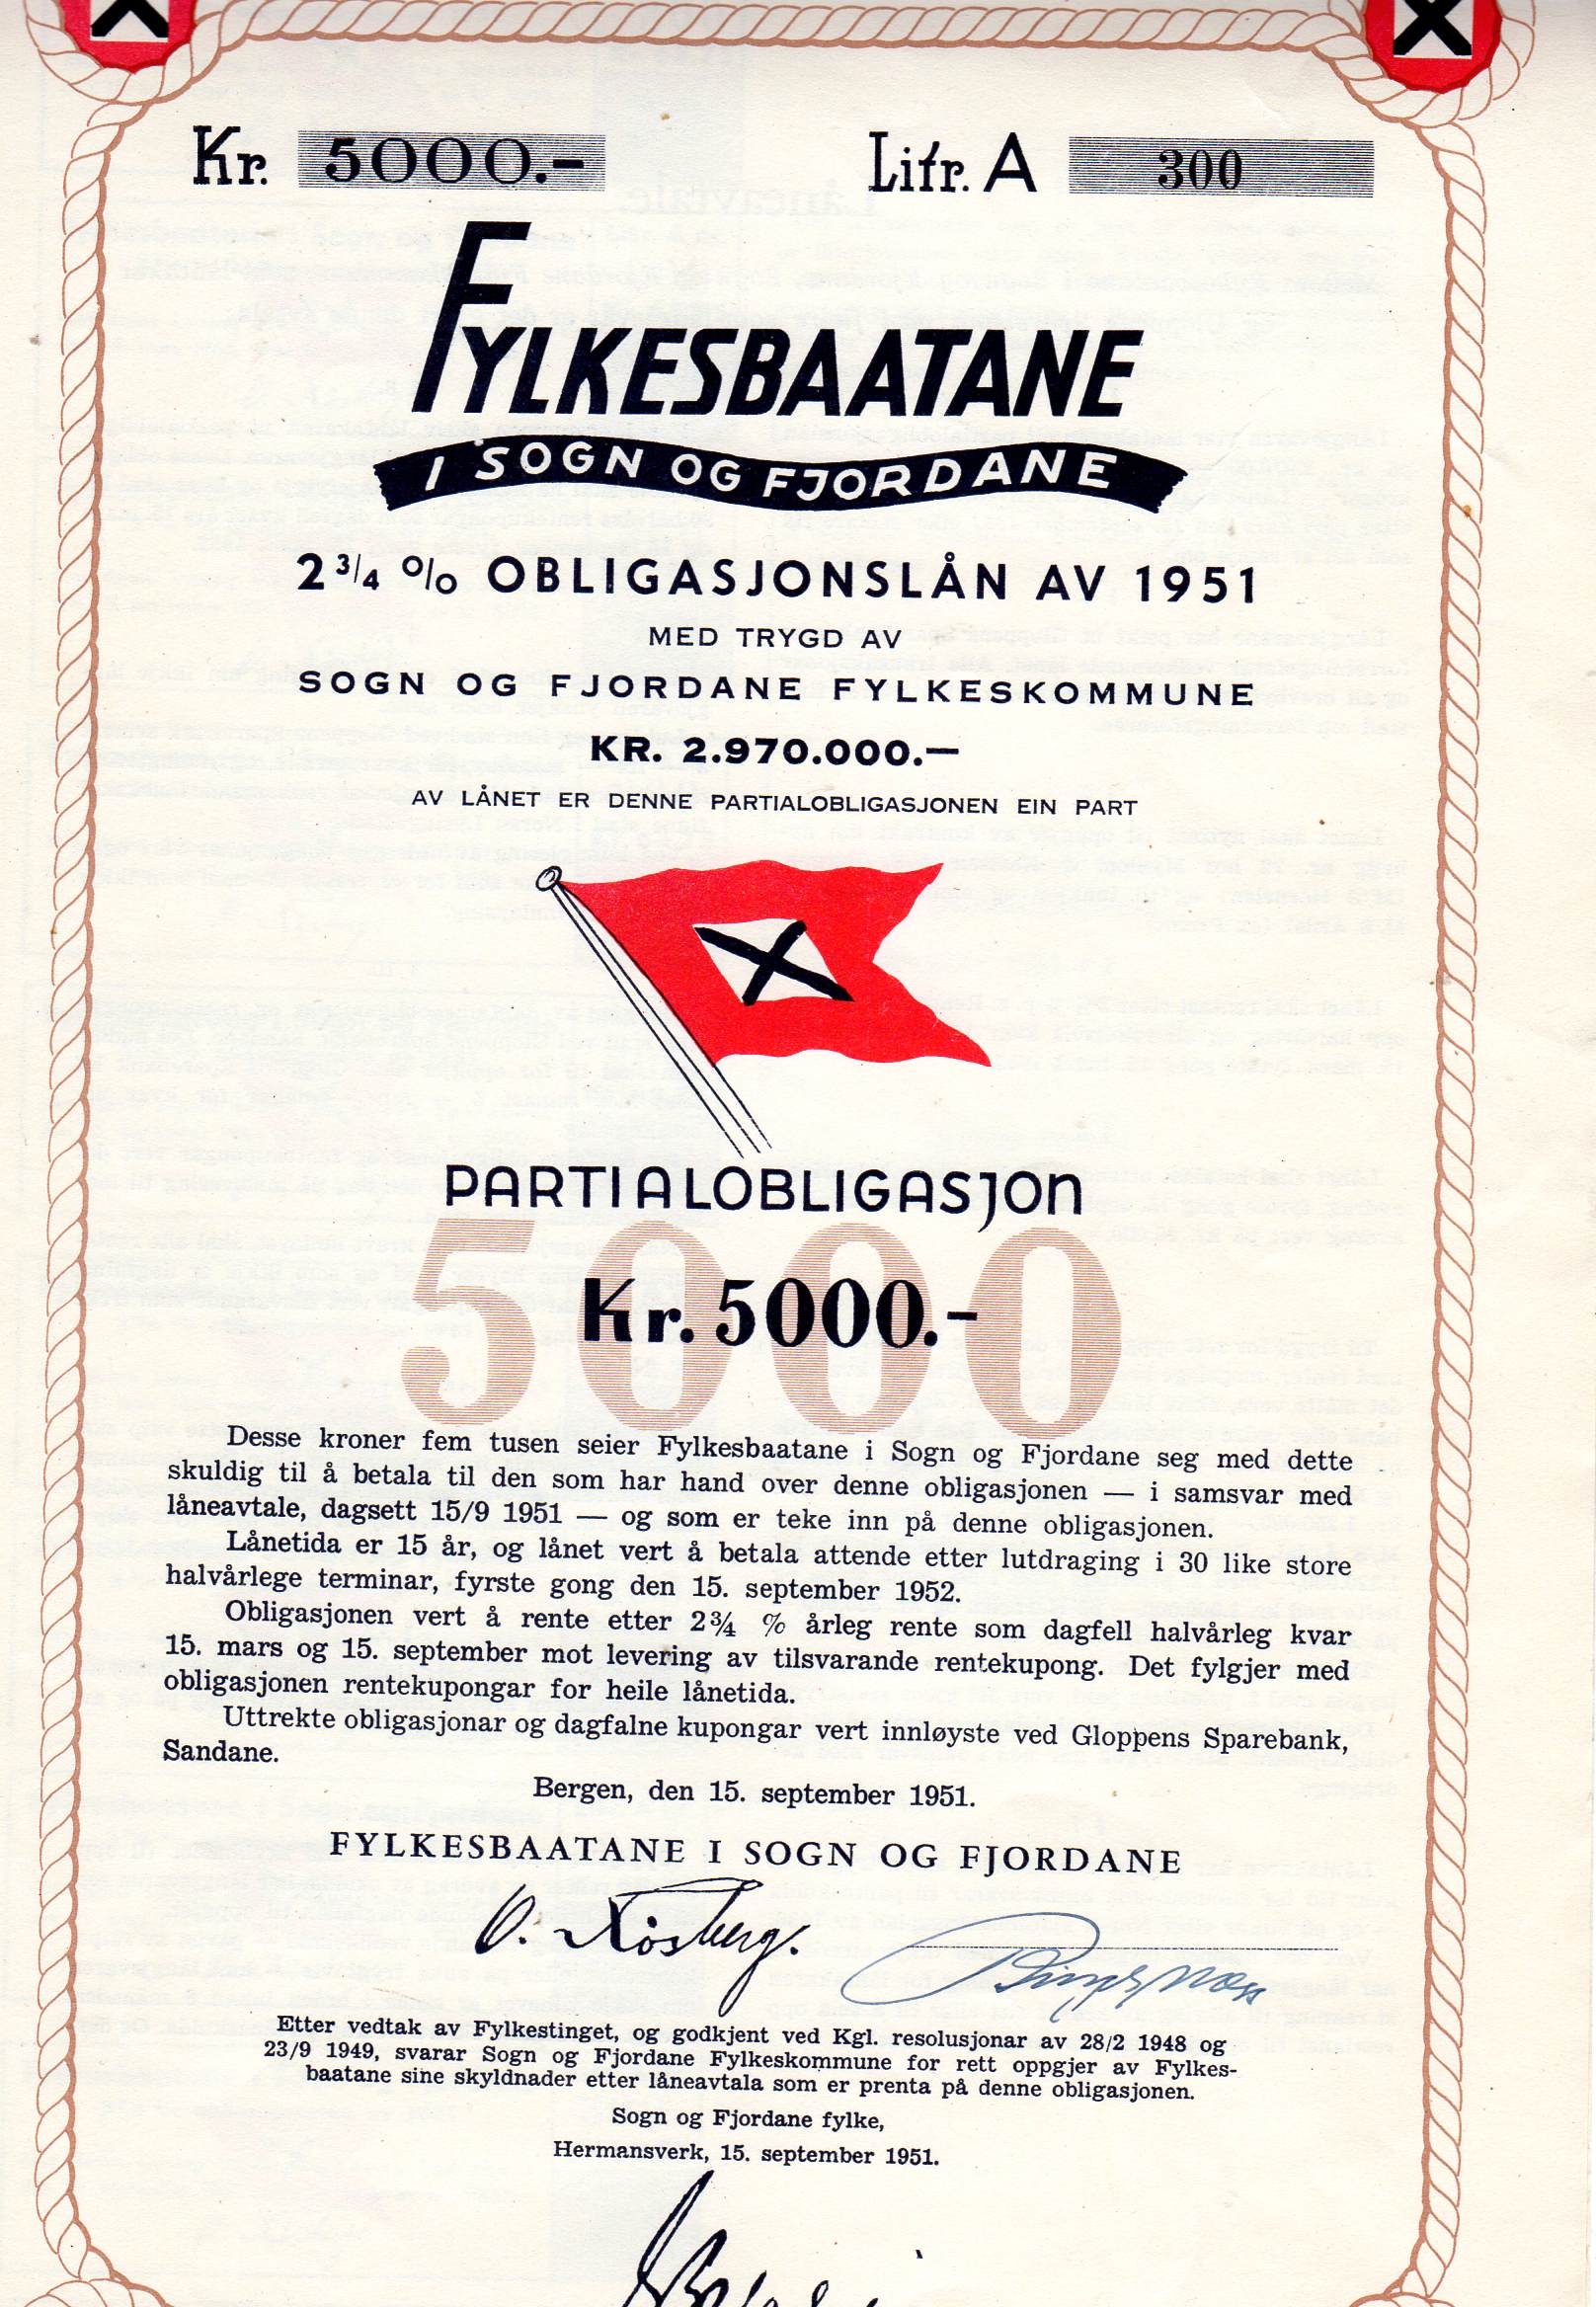 Fylkesbaatane i Sogn og fjordane 2 3/4% obligasjonslån av 1951 litra A kr 5000